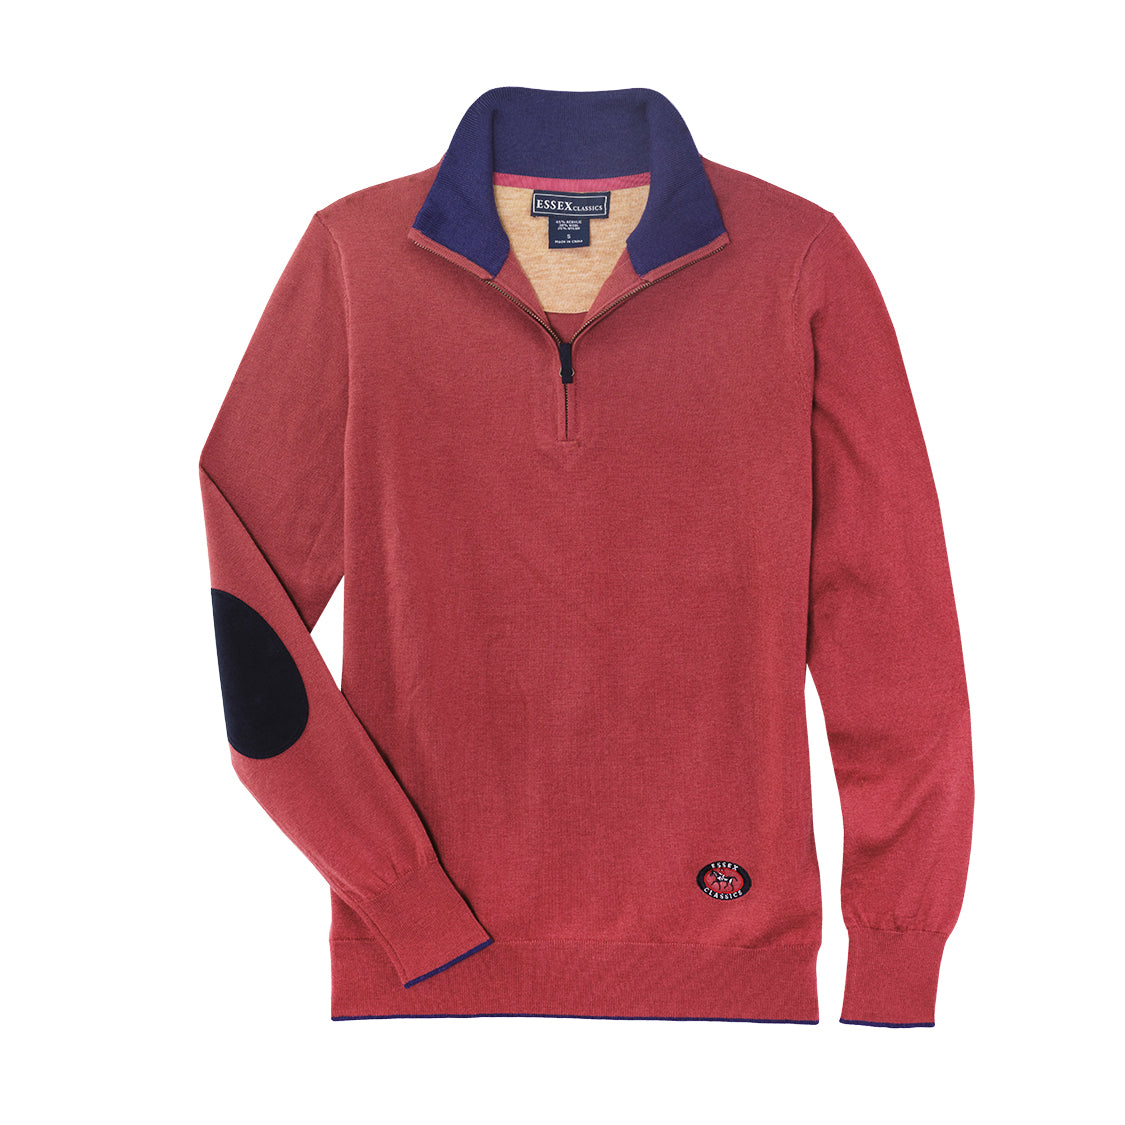 Essex Classics “Trey” Quarter Zip Sweater